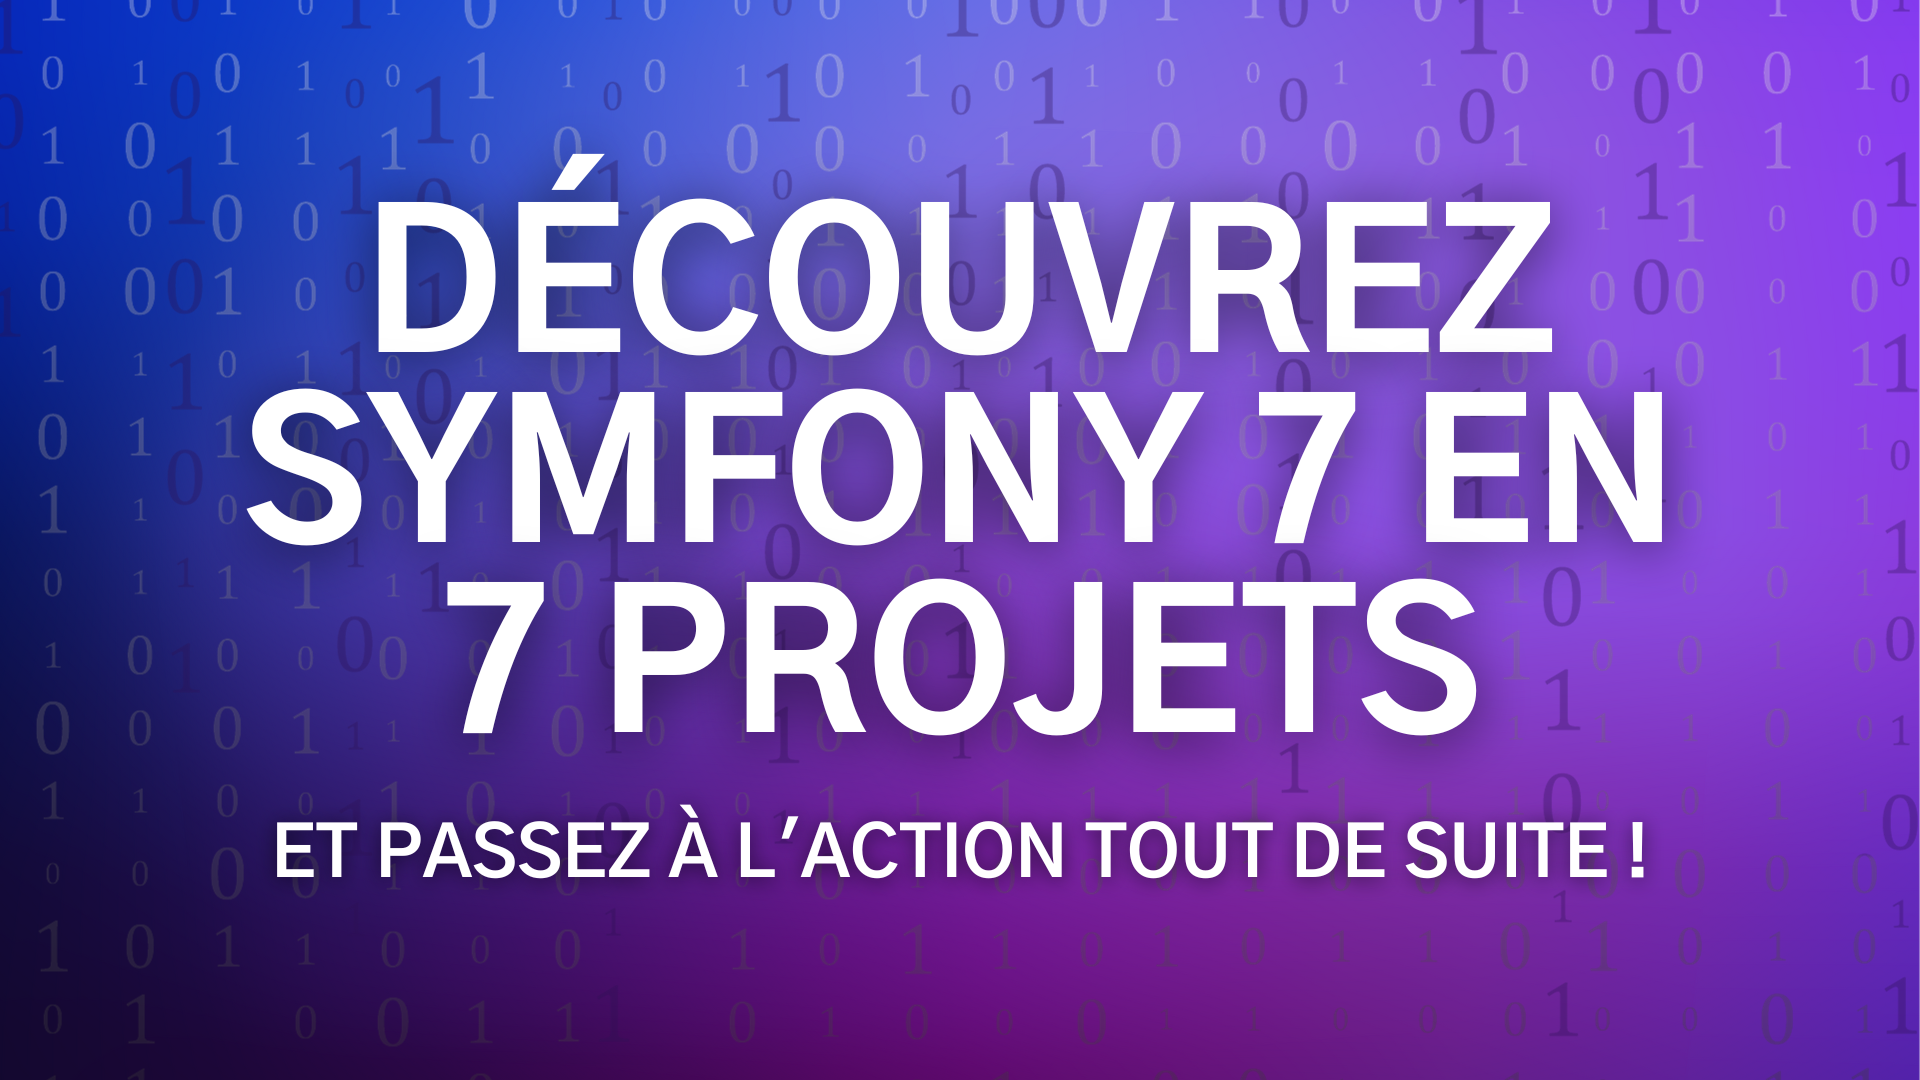 Formation Symfony 7 - Découvrez Symfony 7 en 7 projets